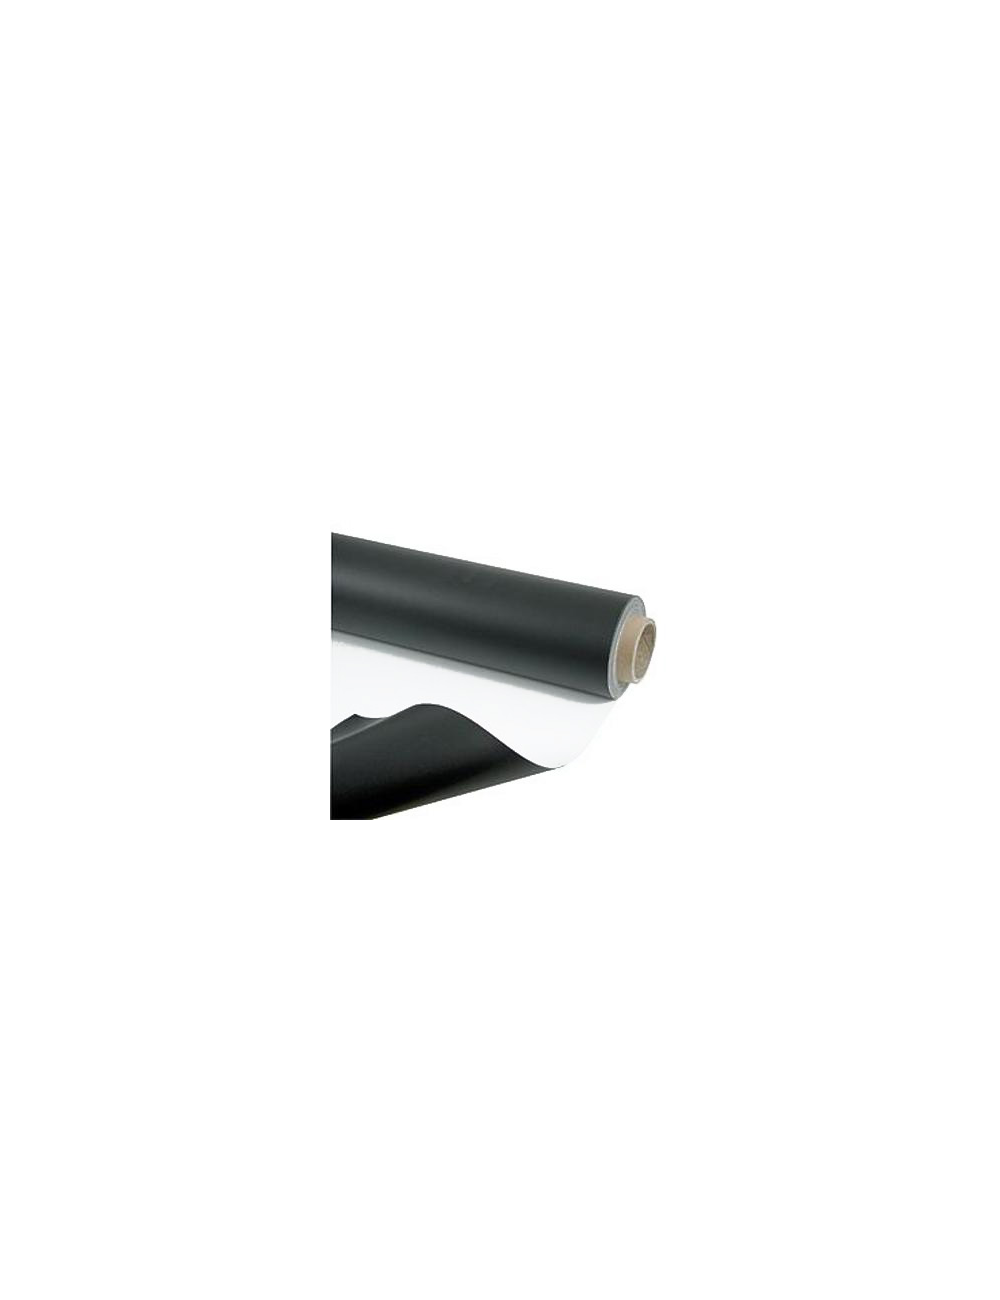 Reversible PVC dance mat Black/Gris Larg. 1.50m (in meter)